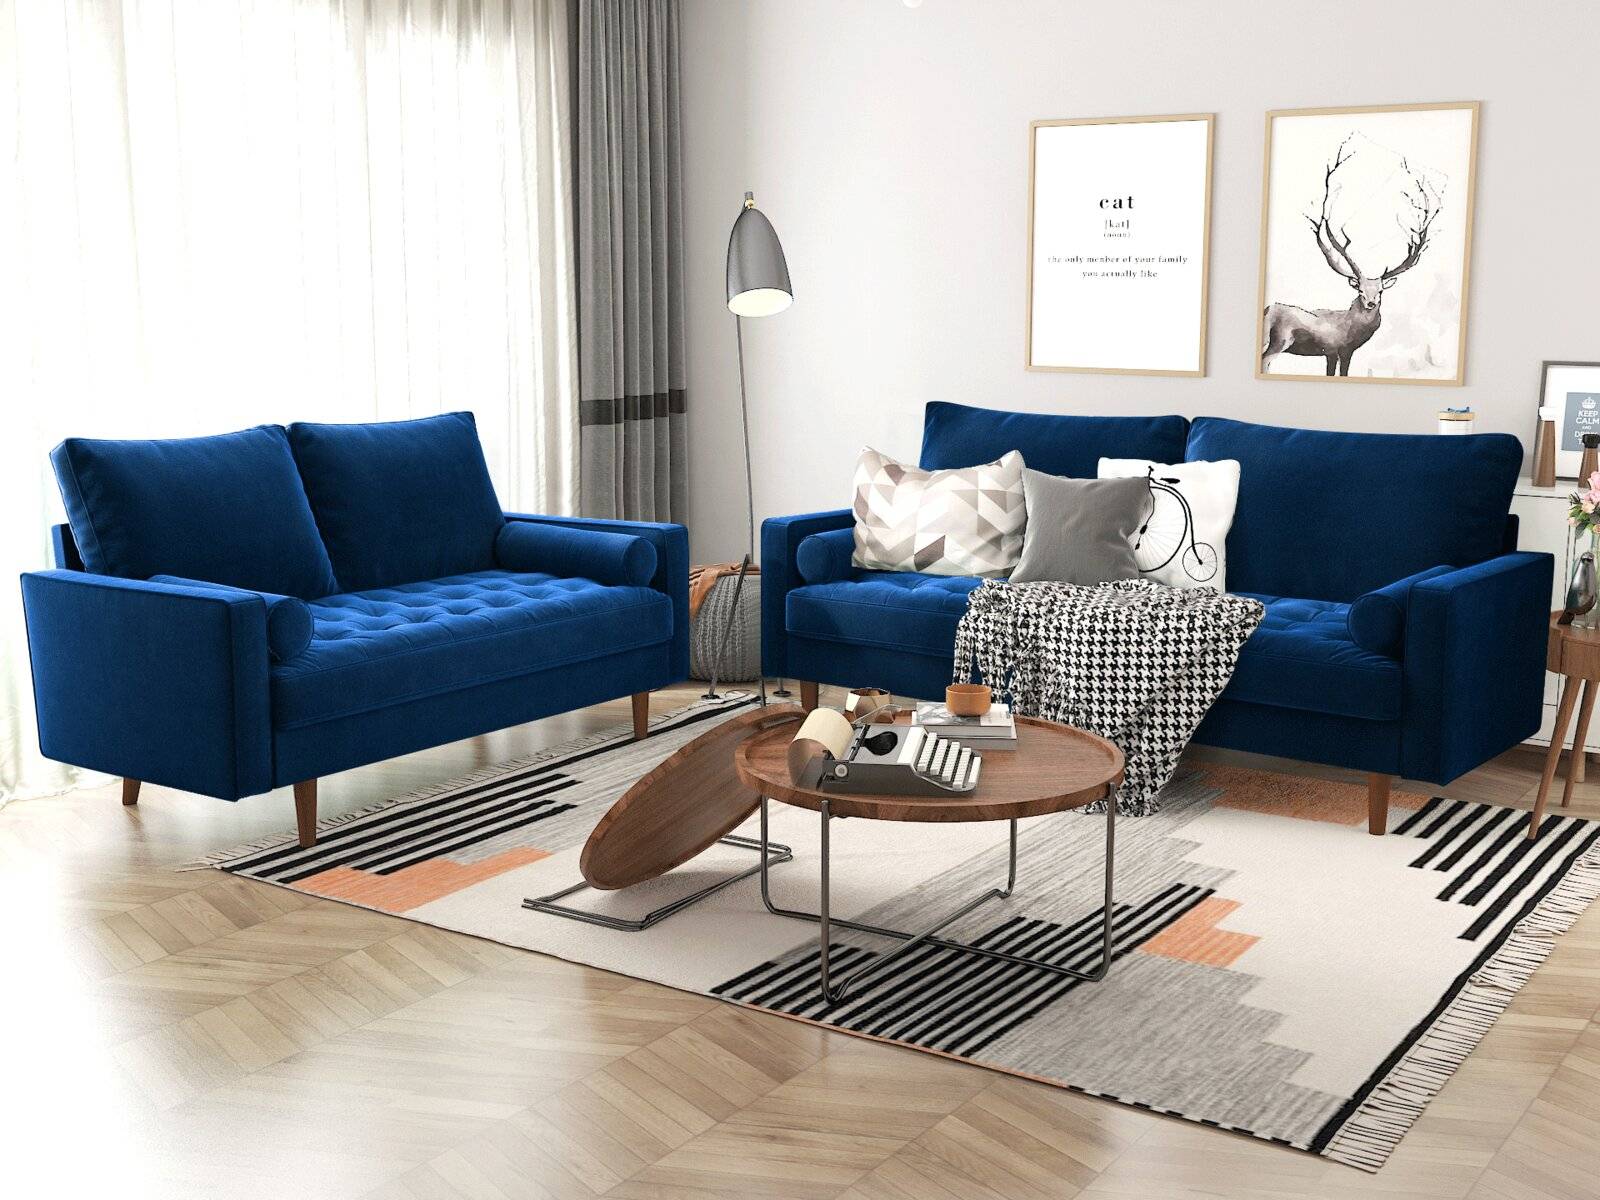 Blue Velvet Sofa Inspiration For A, Living Room Blue Sofa Ideas